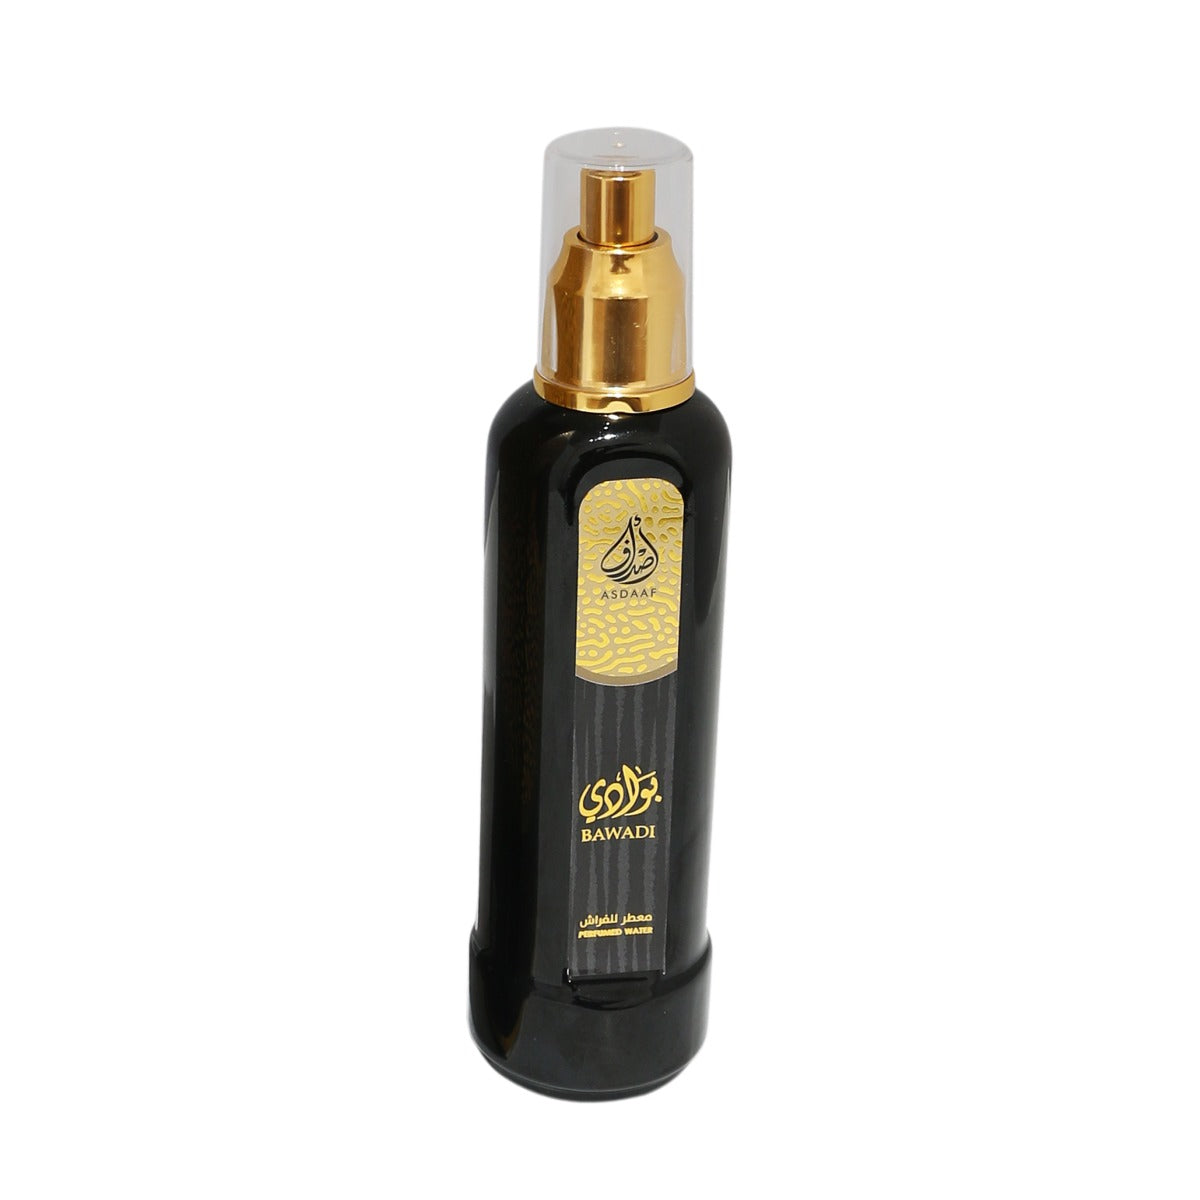 Lattafa Asdaaf Bawadi Perfumed Water, Room Freshener, Faraash 250ml - samawa perfumes 